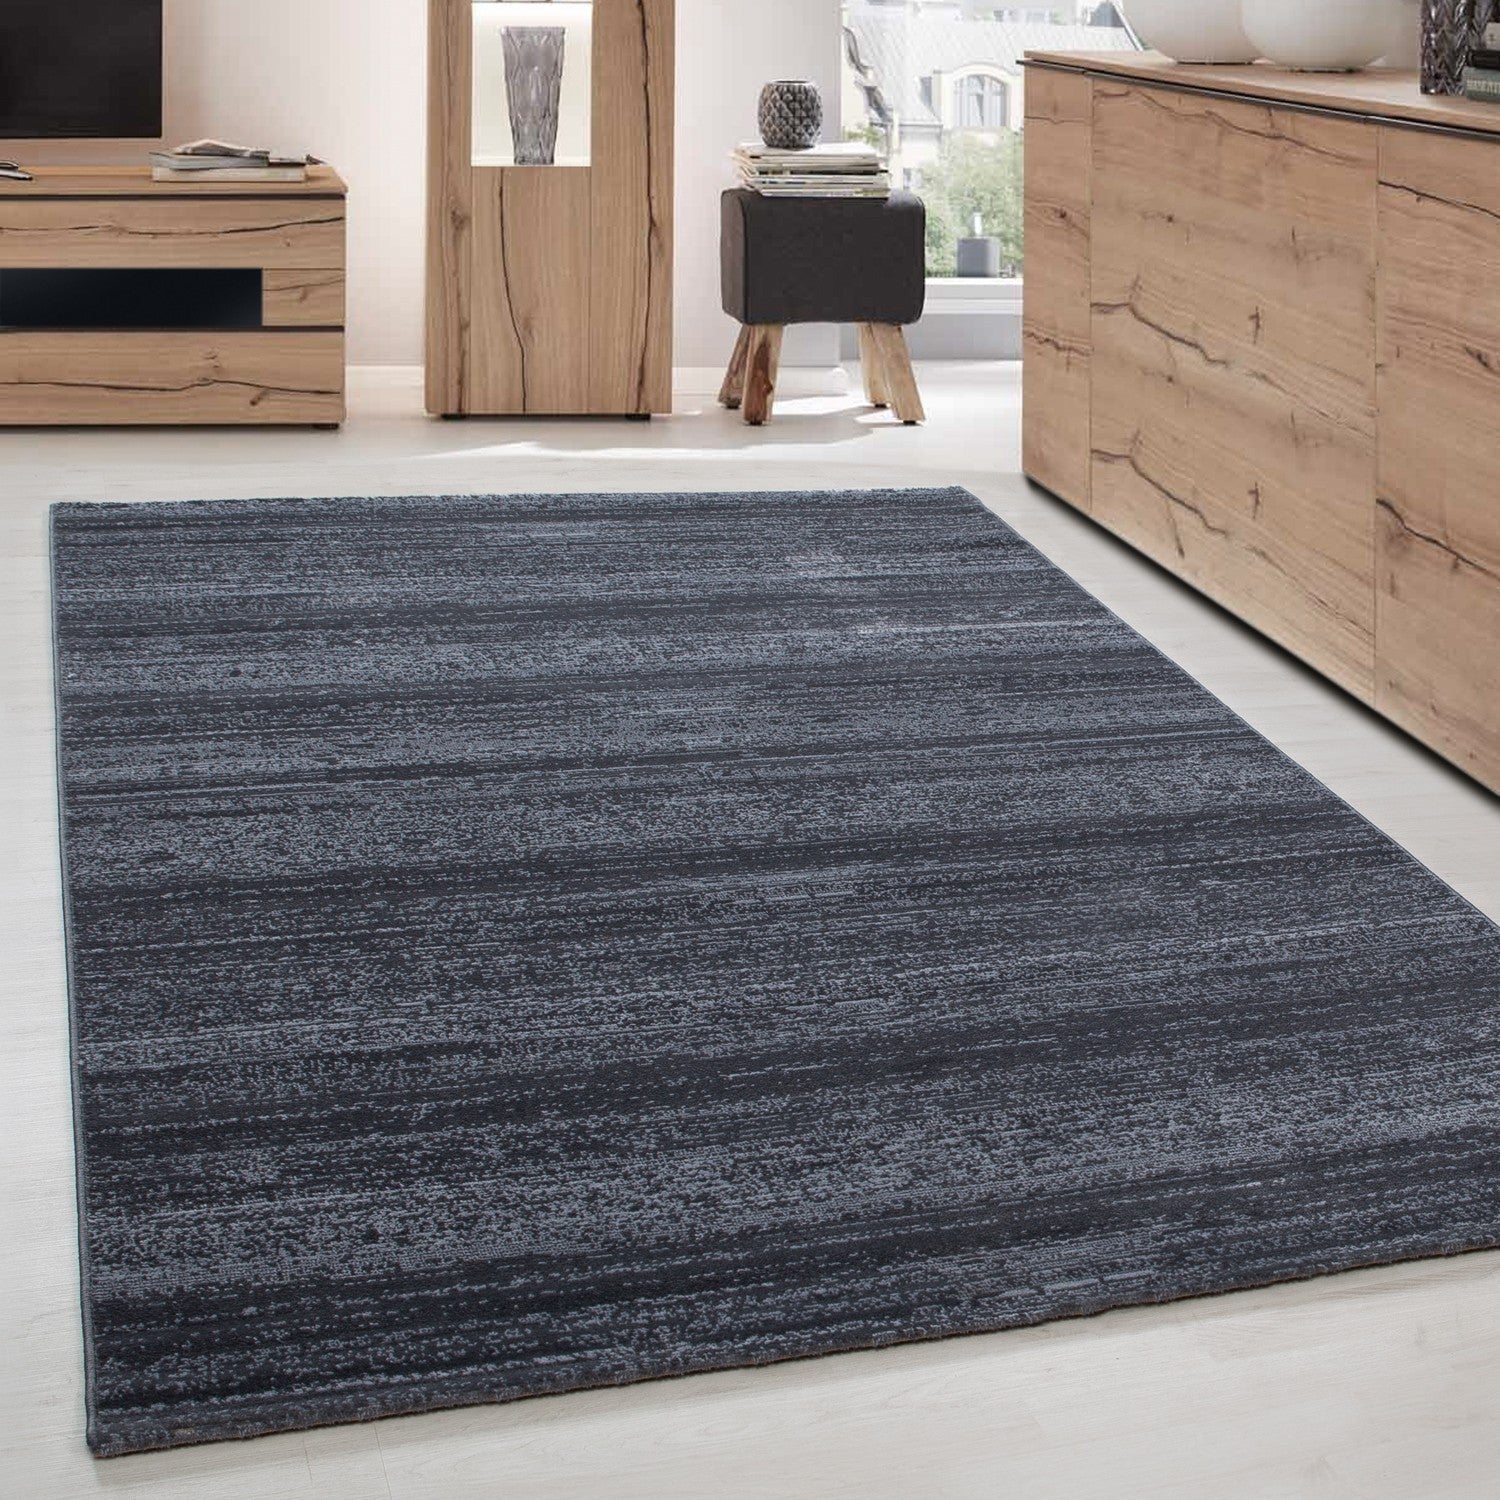 Teppich Evimcarpet Anthrazit – Kurzflor Wohnzimmer Grau Jugendzimmer